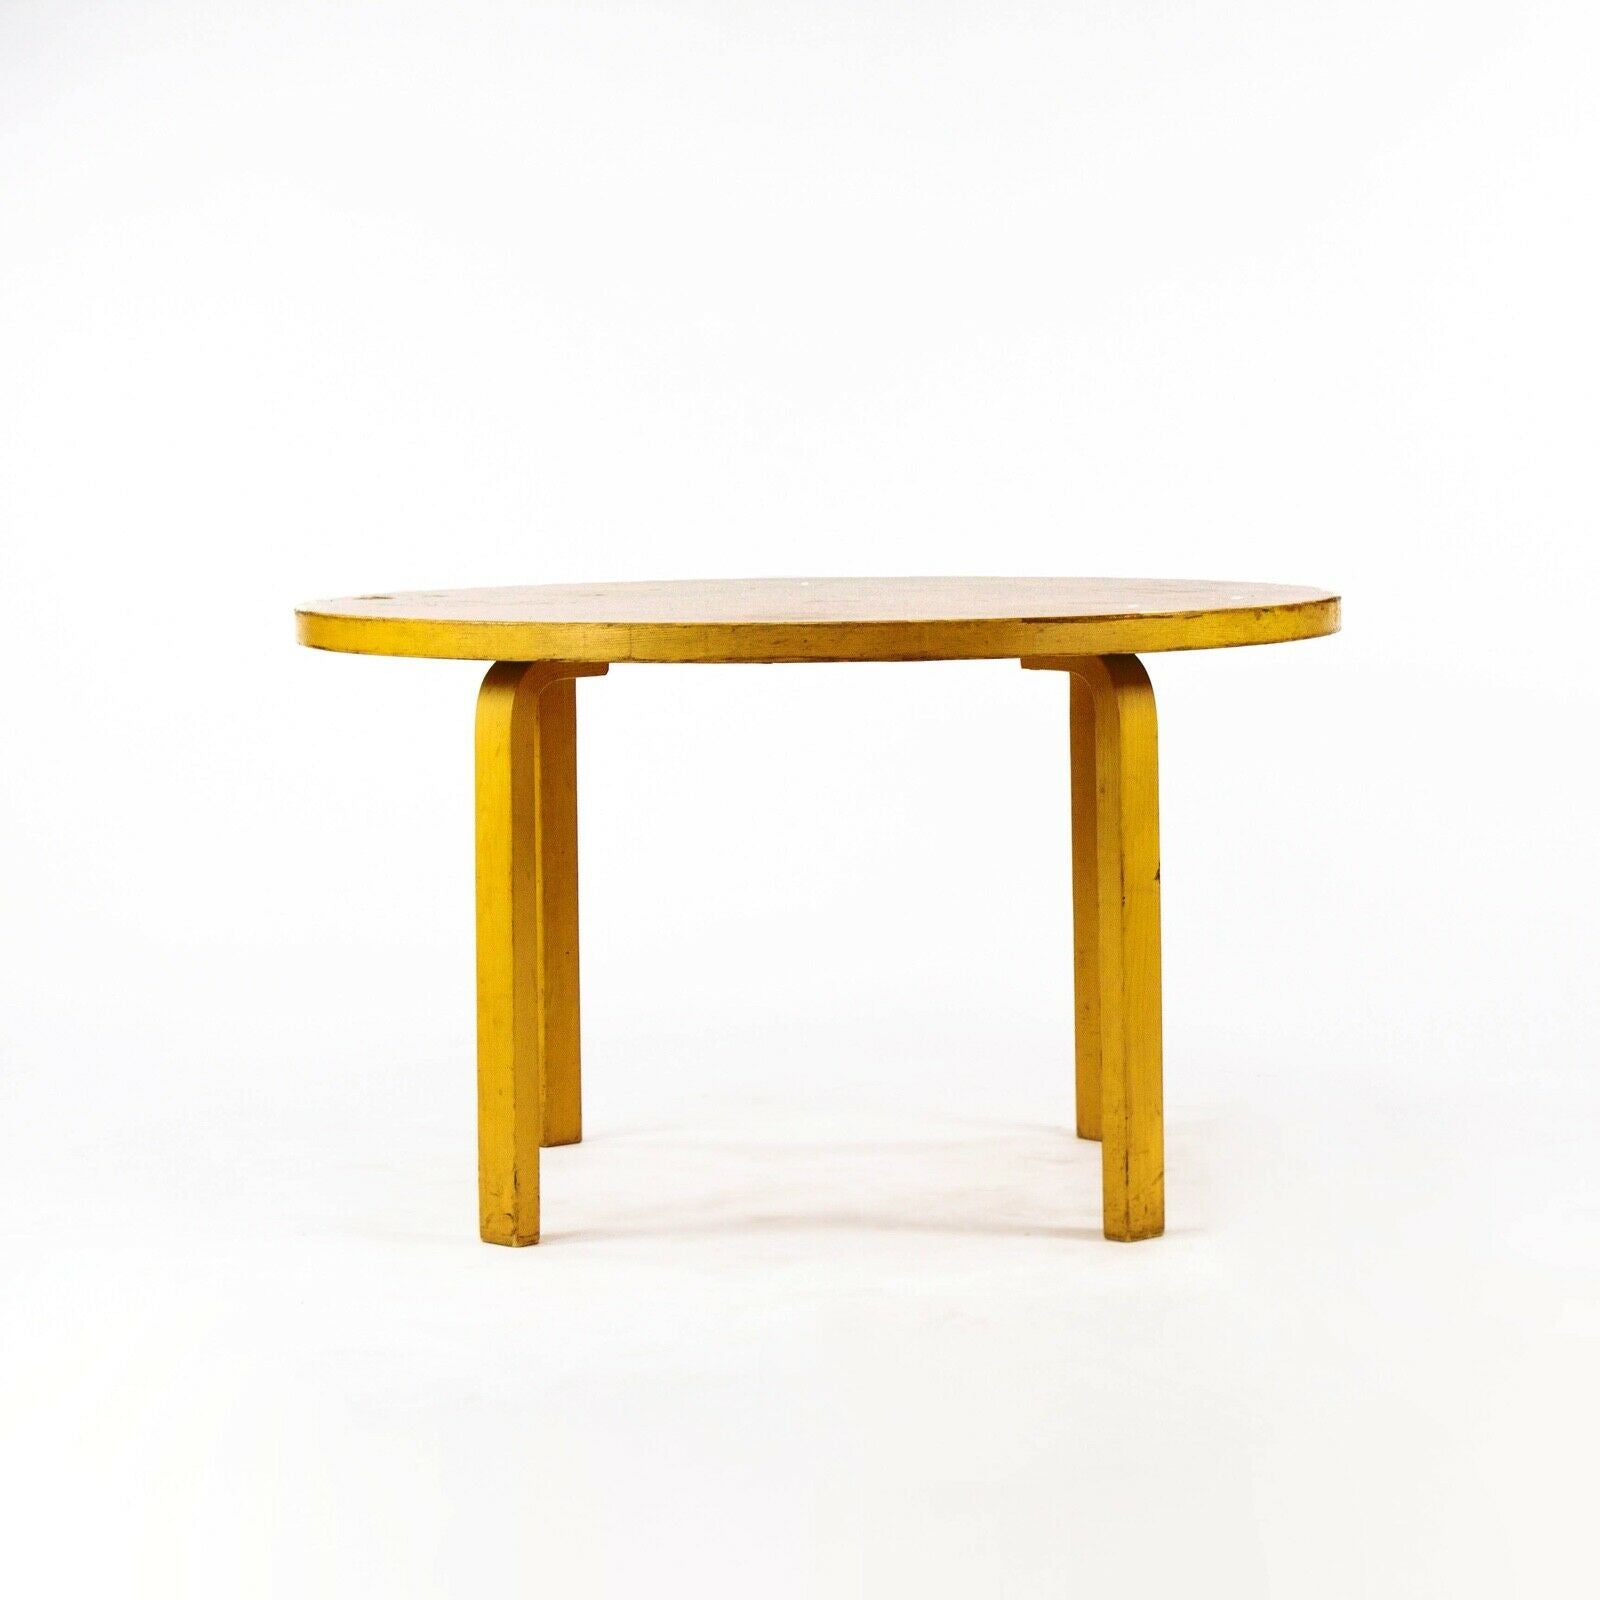 1960s Alvar Aalto for Artek & ICF Bent L Leg Round Dining Table No. 91 in Birch